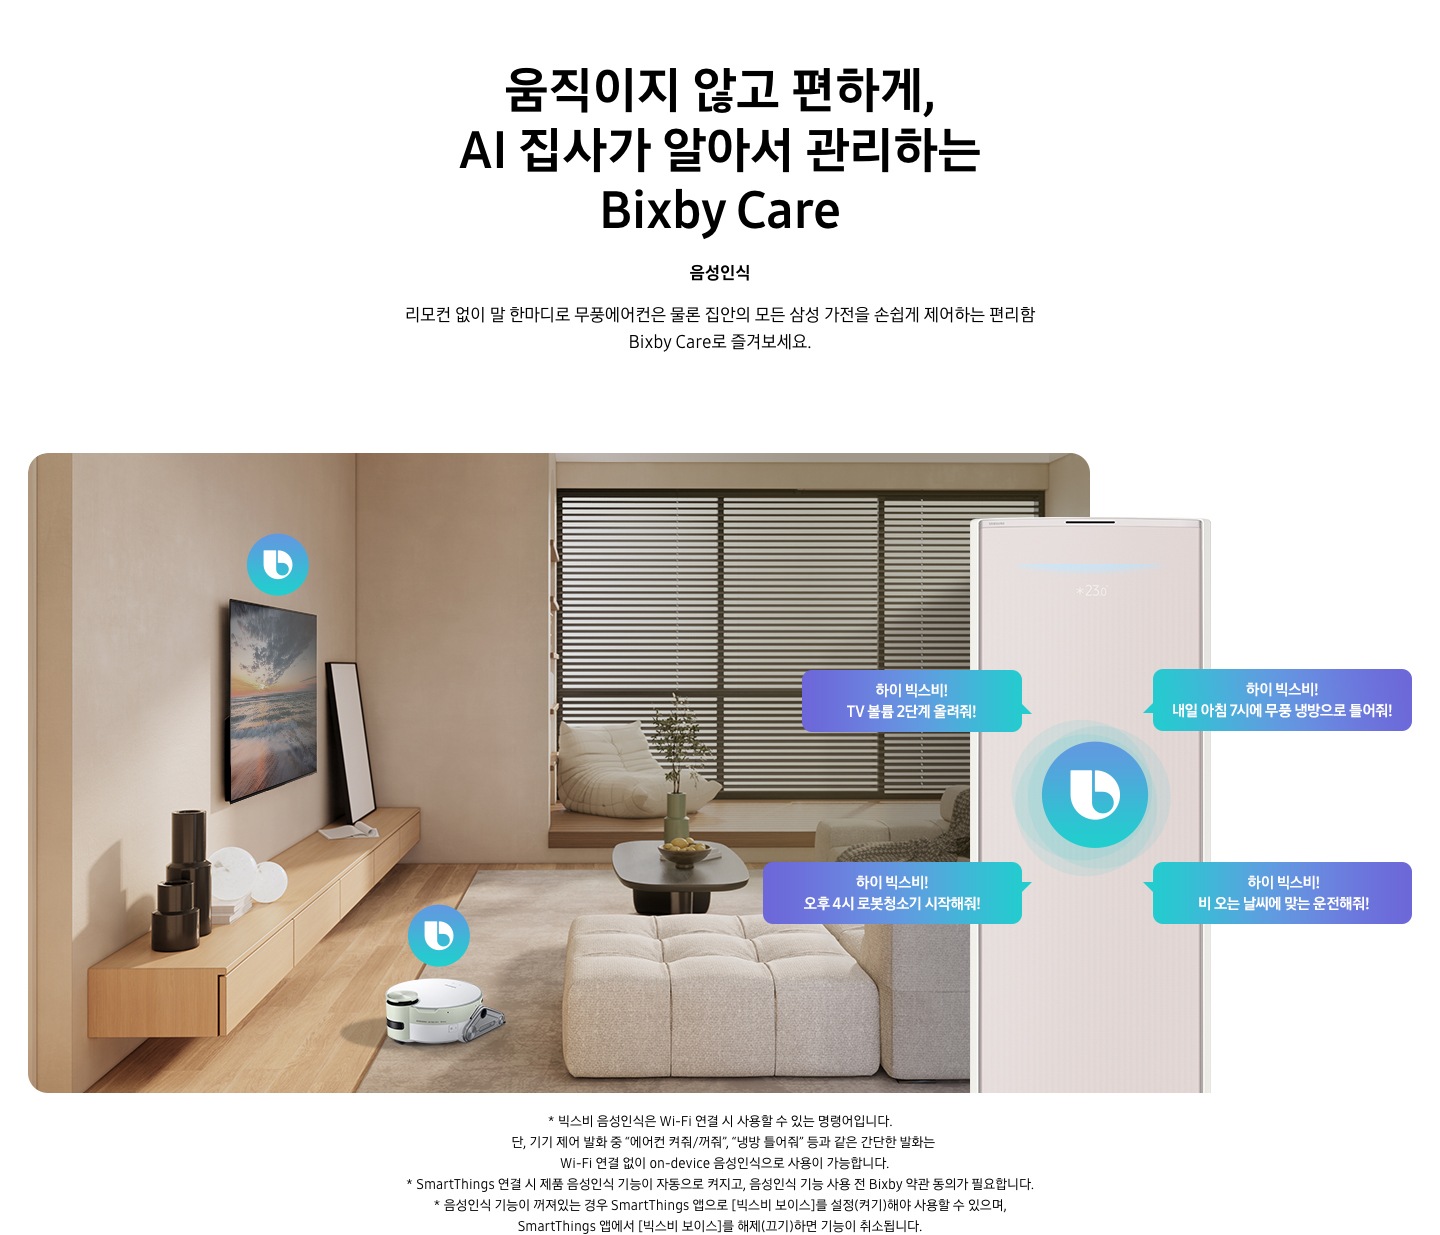 움직이지 않고 편하게, AI 집사가 알아서 관리하는 Bixby Care 타이틀이 보여지며, 음성인식 서브 타이틀, 리모컨 없이 말 한마디로 무풍에어컨은 물론 집안의 모든 삼성 가전을 손쉽게 제어하는 편리함 Bixby Care로 즐겨보세요 설명글이 보여집니다. 우드와 베이지로 인테리어 되어있는 공간에 좌측 벽에 삼성 QLED TV가 벽걸이형으로 설치되어 있으며, 아래 우드로 제작된 선반이 벽걸이 형으로 부착되어 있는 모습이 보여집니다. 선반 위에 우측엔 하얀 배경의 액자와 좌측엔 검은색 원형 화병이 보여집니다. 티비 앞 베이지 톤의 러그가 깔려있는 거실 바닥에 비스포크 제트 봇 로봇청소기가 청소중이며, 가운데 원목 탁자 보여지며 탁자위 화병과 나무가 보여지며, 그뒤로 베이지 톤의 쇼파가 보여집니다. 정면엔 창문이 보여지며 창문에 블라인더가 설치 되어 있습니다. 창앞에는 1인용 쇼파가 놓여져 있습니다. 우측엔 에어컨 상단부가 크게 확대되어 보여지며, 빅스비 음성인식으로 설치되어있는 티비와, 로봇청소기를 작성하는 말풍선이 보여집니다. 하이 빅스비! TV 볼륨 2단계 올려줘!, 하이 빅스비! 오후 4시 로봇청소기 시작해줘!, 하이 빅스비! 비오는 날씨에 맞는 운전해줘, 하이 빅스비! 내일 아침7시에 무풍 냉방으로 틀어줘! 말풍선이 보여집니다. 하단 설명글로 * 빅스비 음성인식은 Wi-Fi 연결 시 사용할 수 있는 명령어입니다. 단, 기기 제어 발화 중 “에어컨 켜줘/꺼줘”, “냉방 틀어줘” 등과 같은 간단한 발화는 Wi-Fi 연결 없이 on-device 음성인식으로 사용이 가능합니다. * SmartThings 연결 시 제품 음성인식 기능이 자동으로 켜지고, 음성인식 기능 사용 전 Bixby 약관 동의가 필요합니다. * 음성인식 기능이 꺼져있는 경우 SmartThings 앱으로 [빅스비 보이스]를 설정(켜기)해야 사용할 수 있으며, SmartThings 앱에서 [빅스비 보이스]를 해제(끄기)하면 기능이 취소됩니다. 보여집니다.